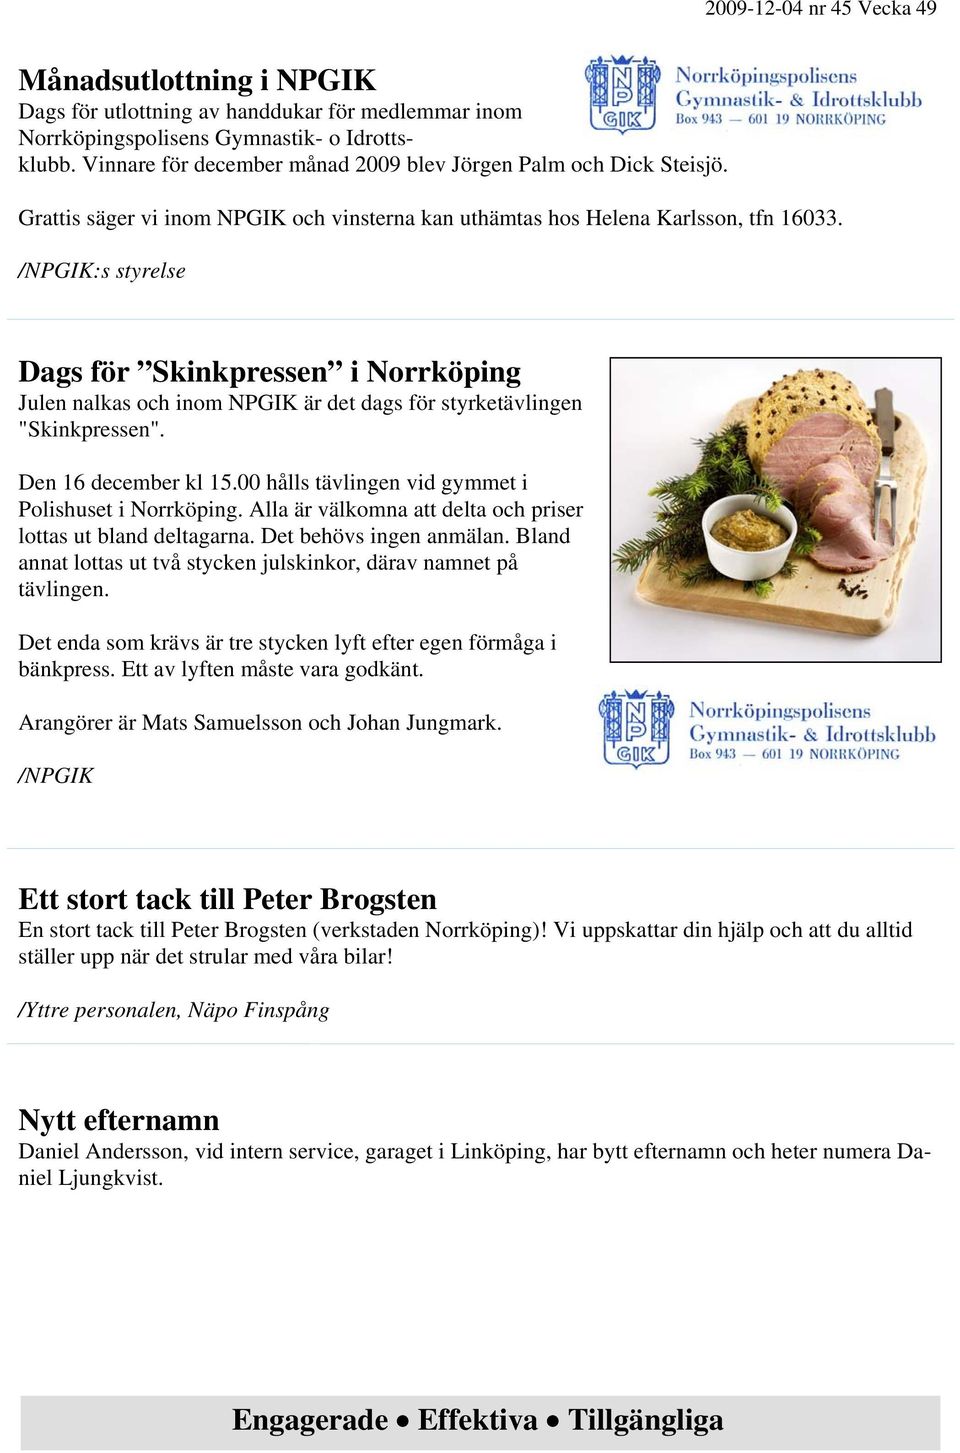 /NPGIK:s styrelse Dags för Skinkpressen i Norrköping Julen nalkas och inom NPGIK är det dags för styrketävlingen "Skinkpressen". Den 16 december kl 15.